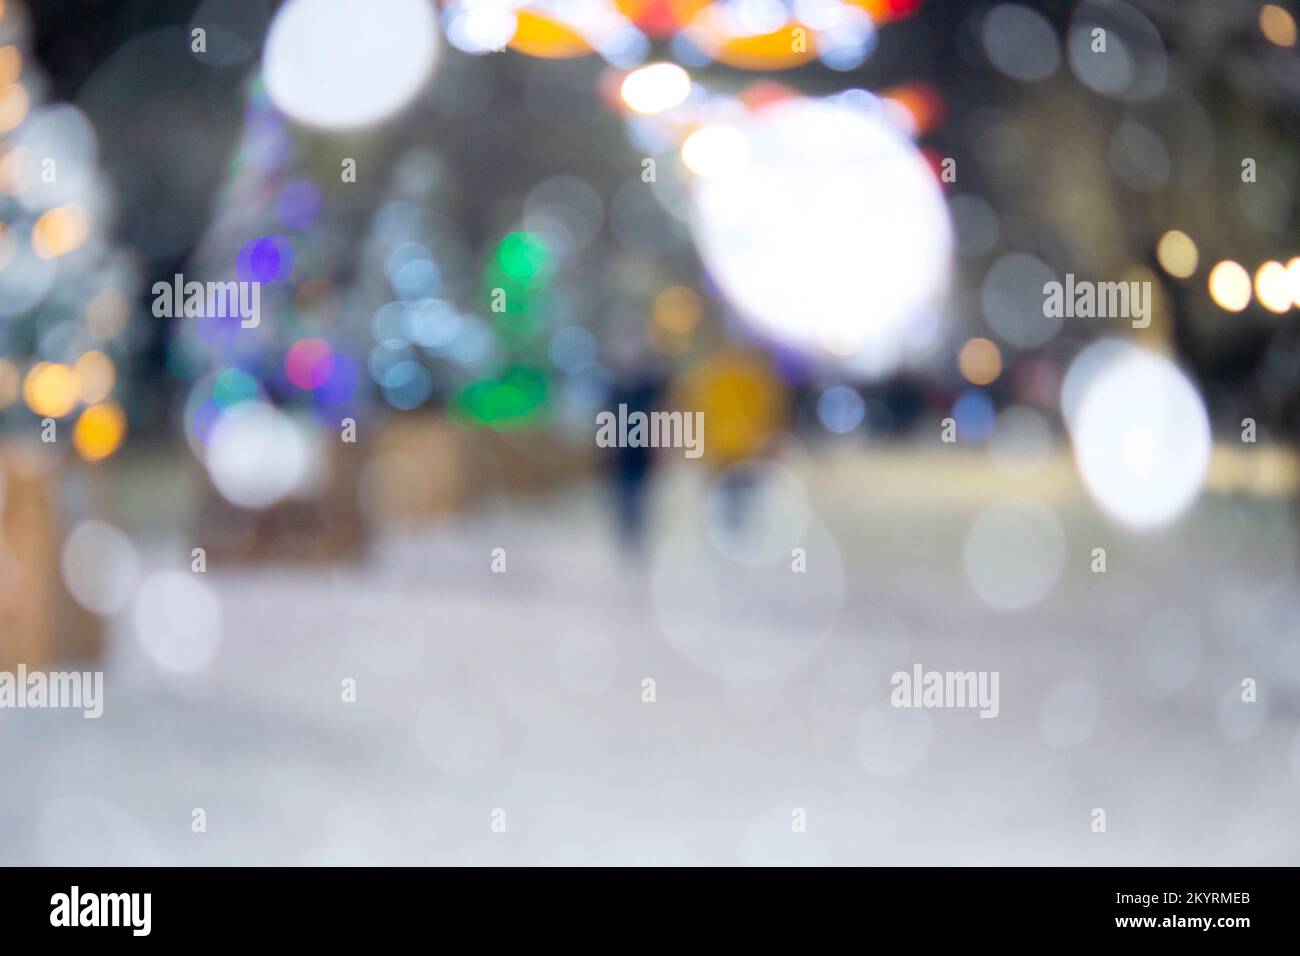 Arrière-plan flou. Rue de la ville pendant les chutes de neige en hiver. Beaucoup d'arbres de Noël décorés, éclairage, décoration sur la rue. Fête de Noël du nouvel an. Lanternes sur les arbres Banque D'Images